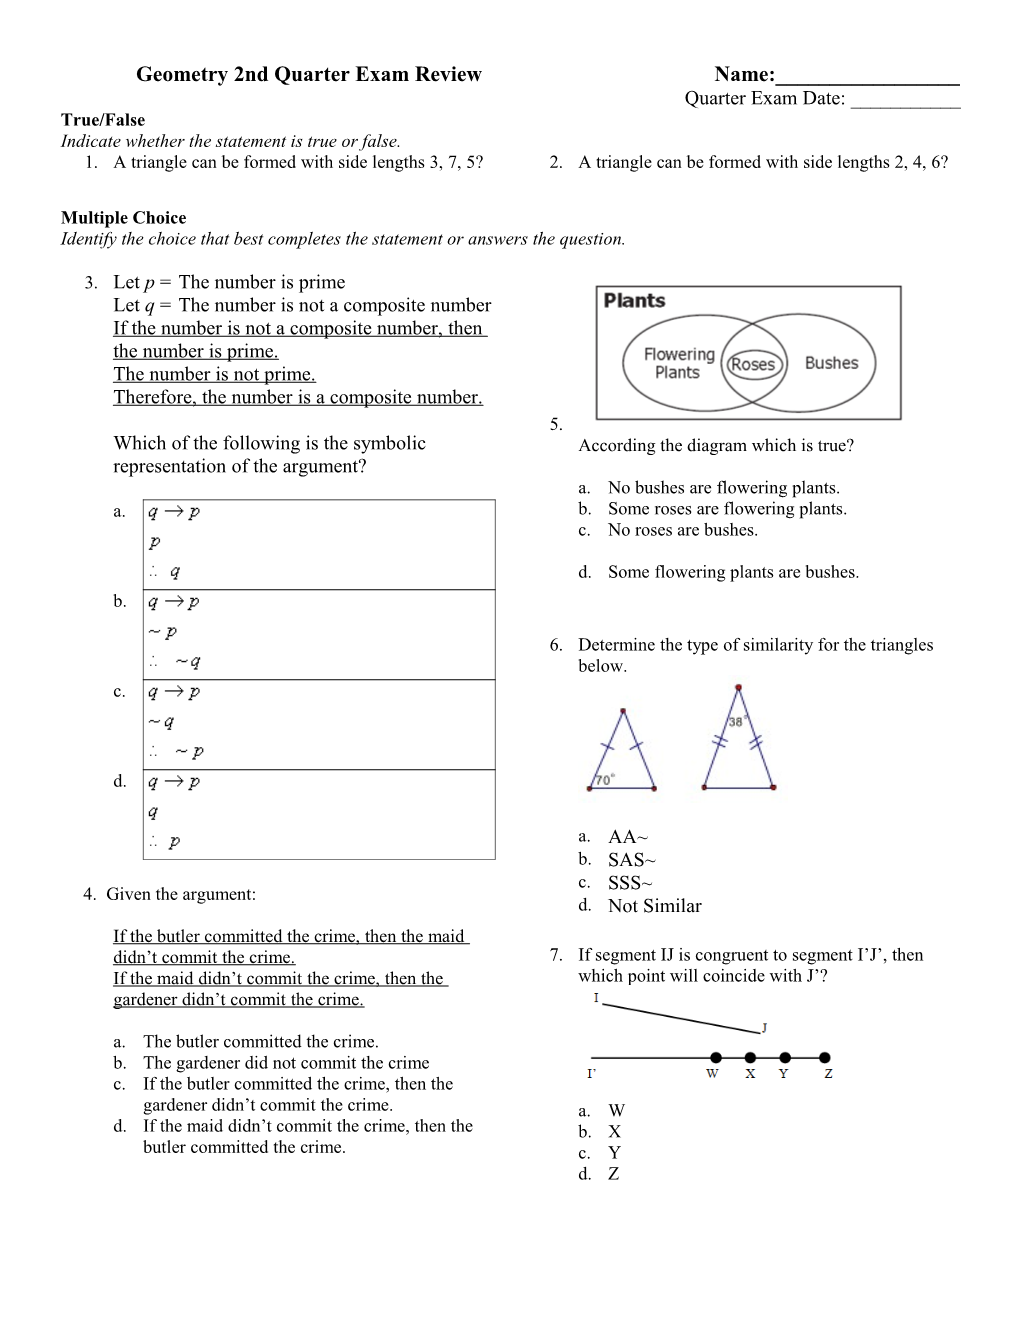 Geometry 2Nd Quarter Exam Review 2013-2014